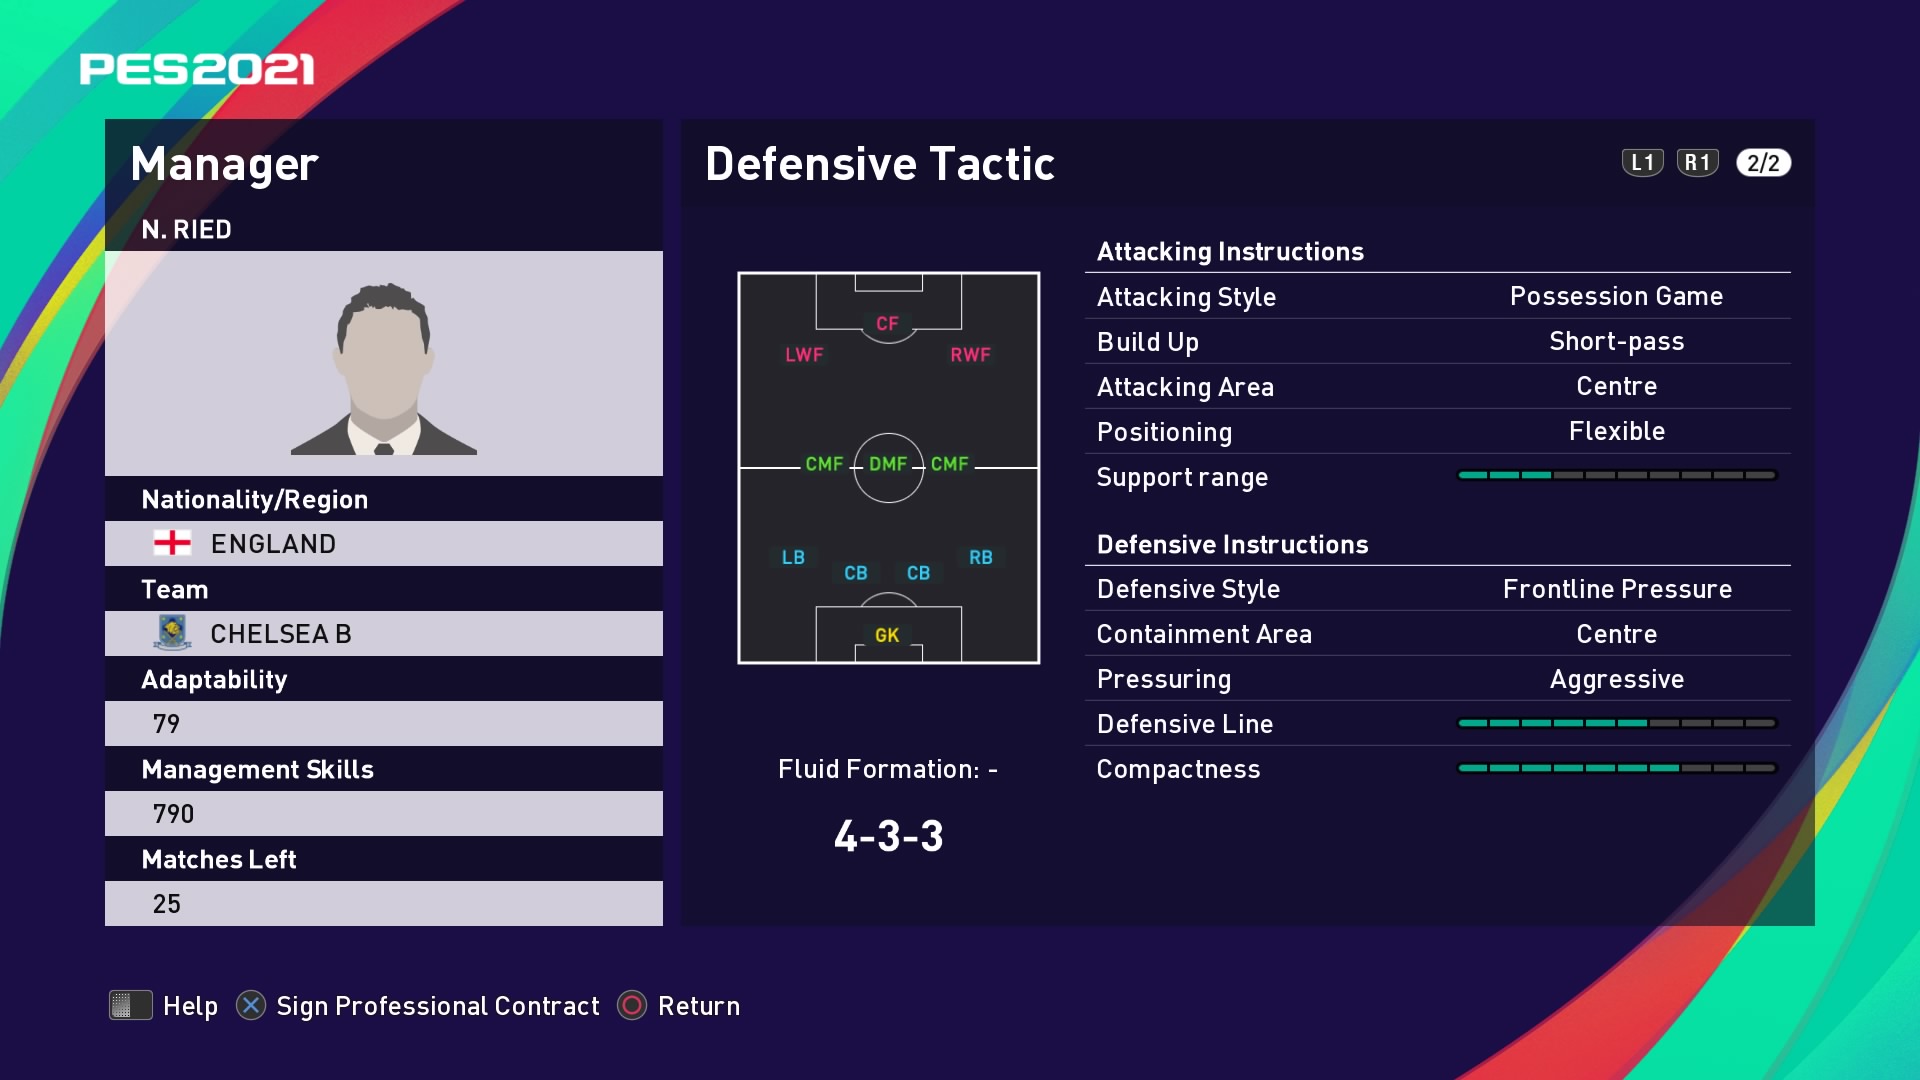 N. Ried (Frank Lampard) Defensive Tactic in PES 2021 myClub